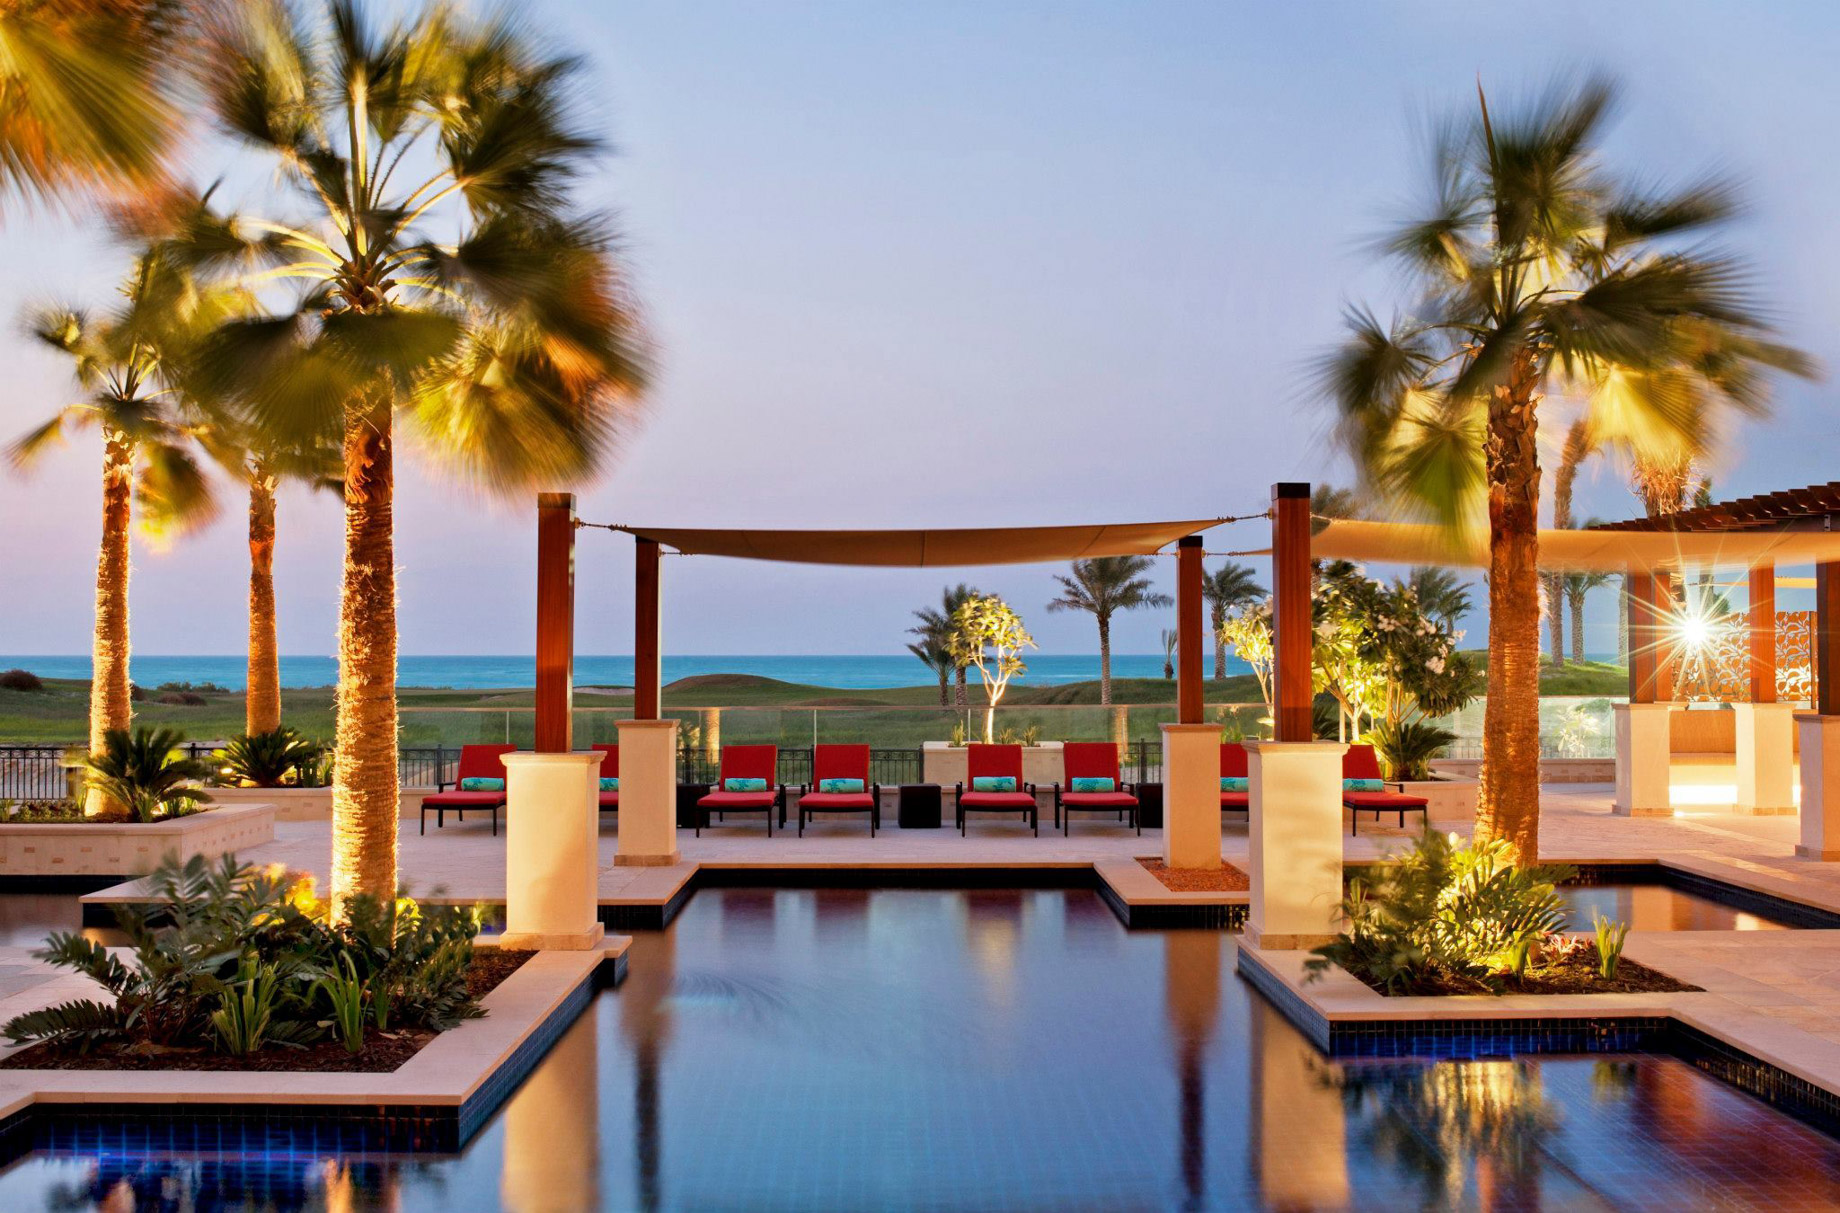 The St. Regis Saadiyat Island Resort - Abu Dhabi, UAE - Exterior Pool Night